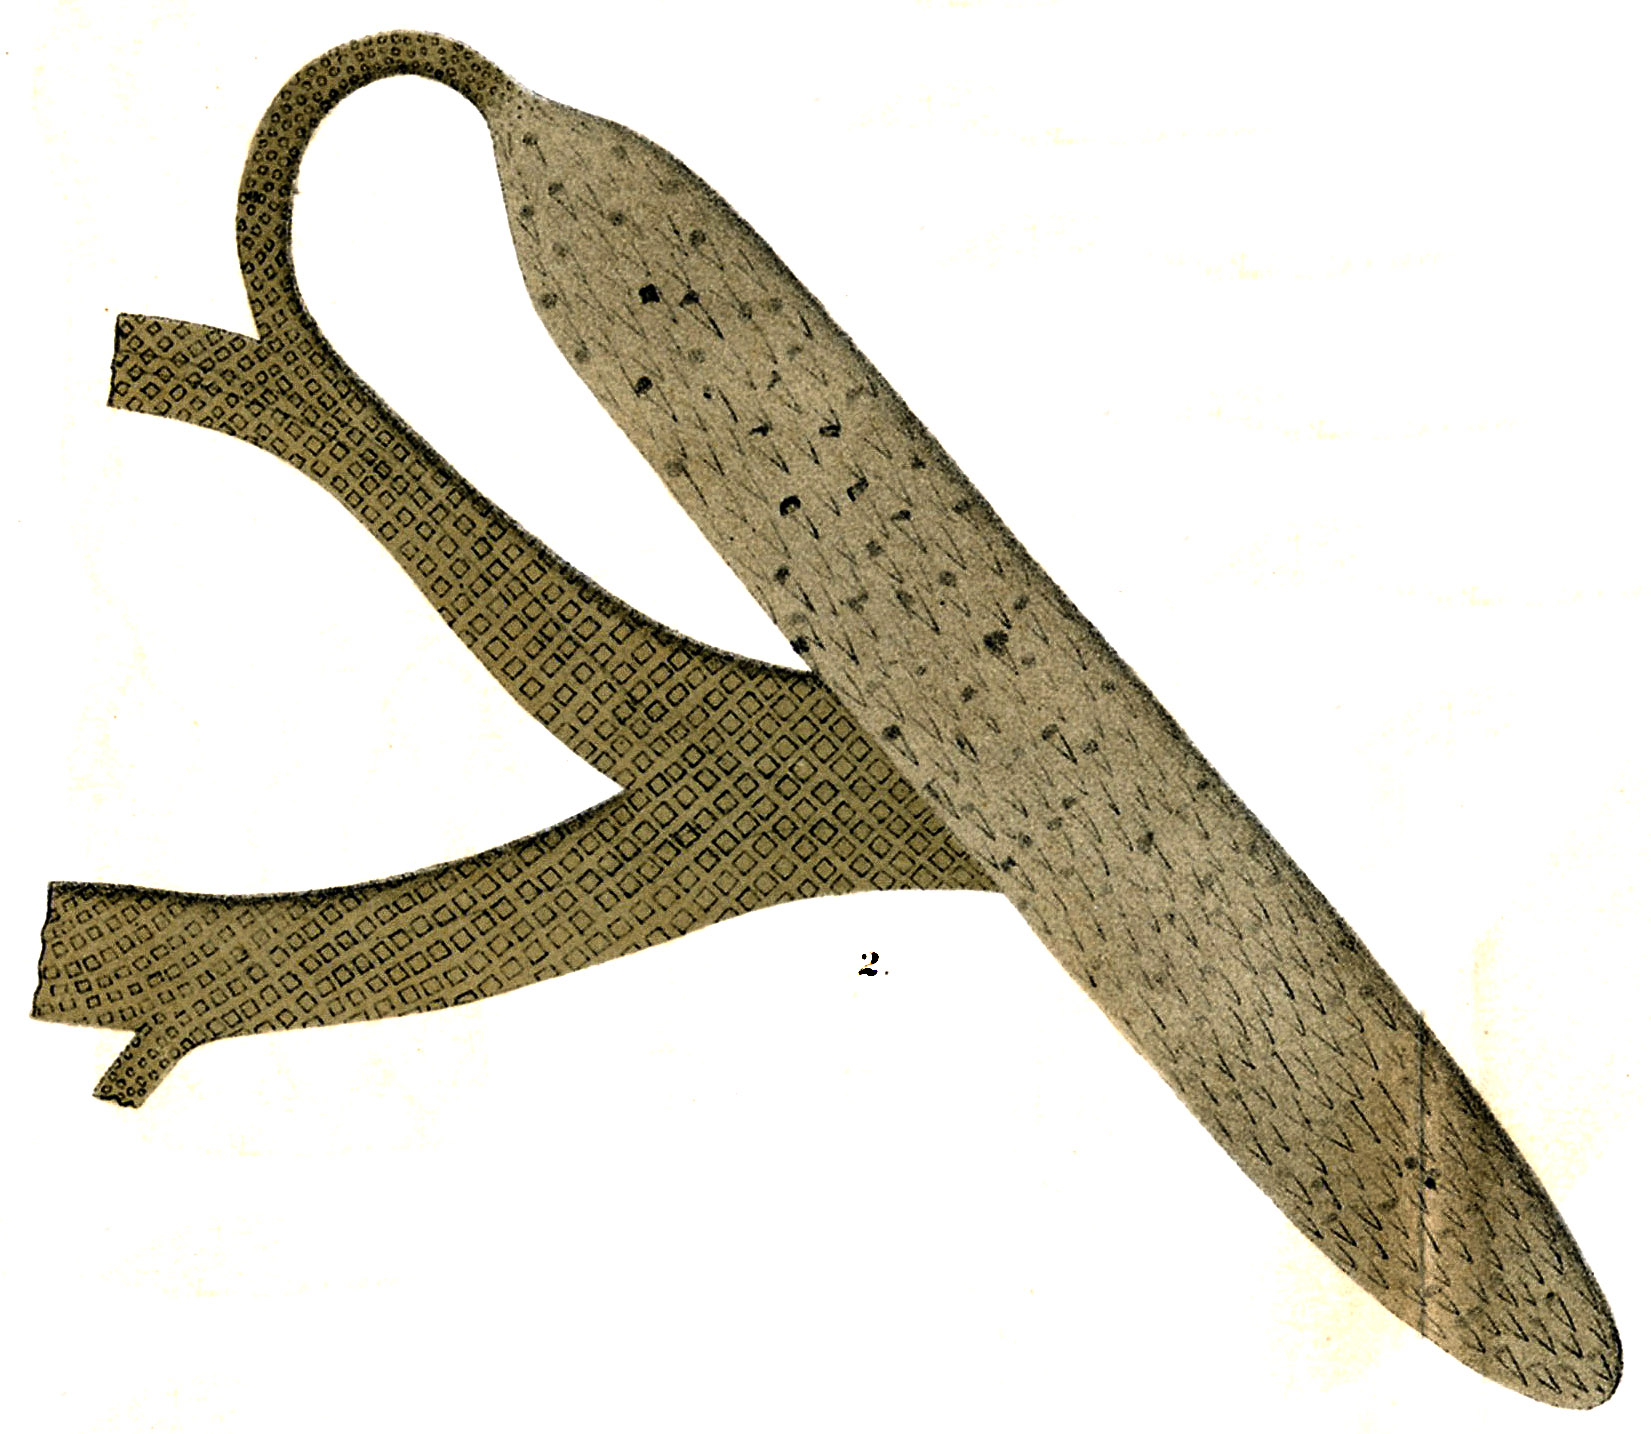 Lepidostrobus variabilis, Lesquereux Plate CVII, No.2